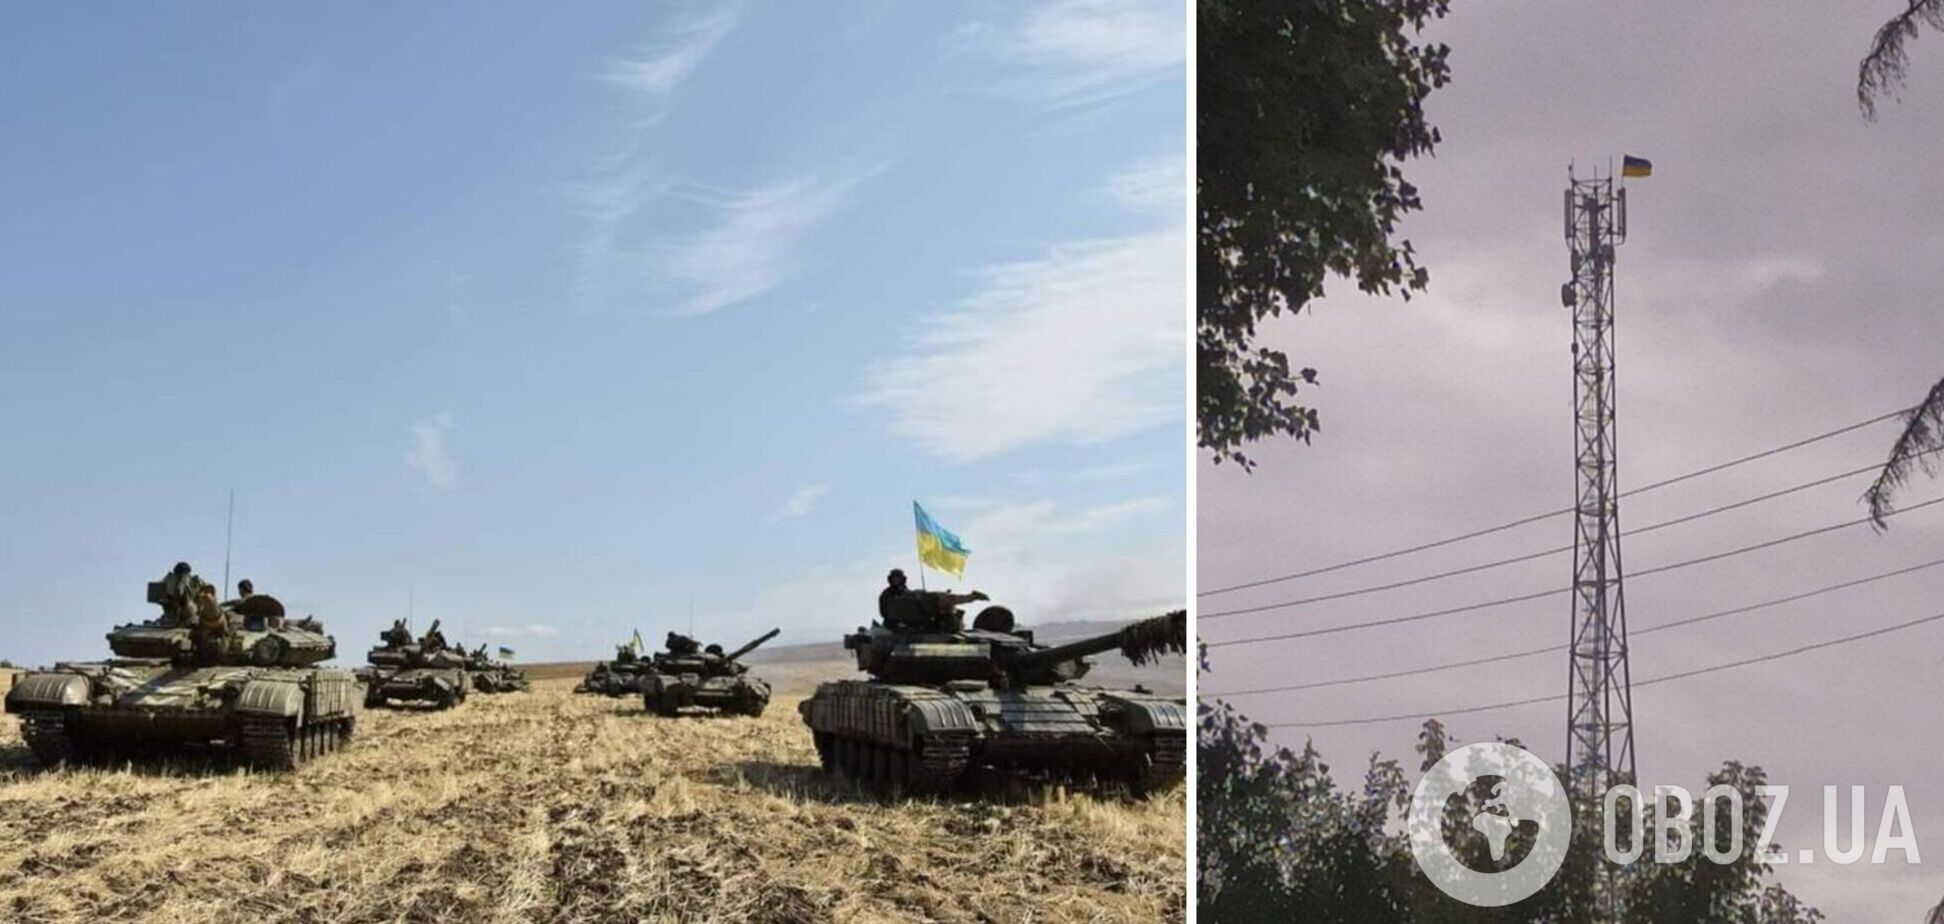 'Сватівщина чекає': Гайдай показав фото з українським прапором у ще одному селі на Луганщині